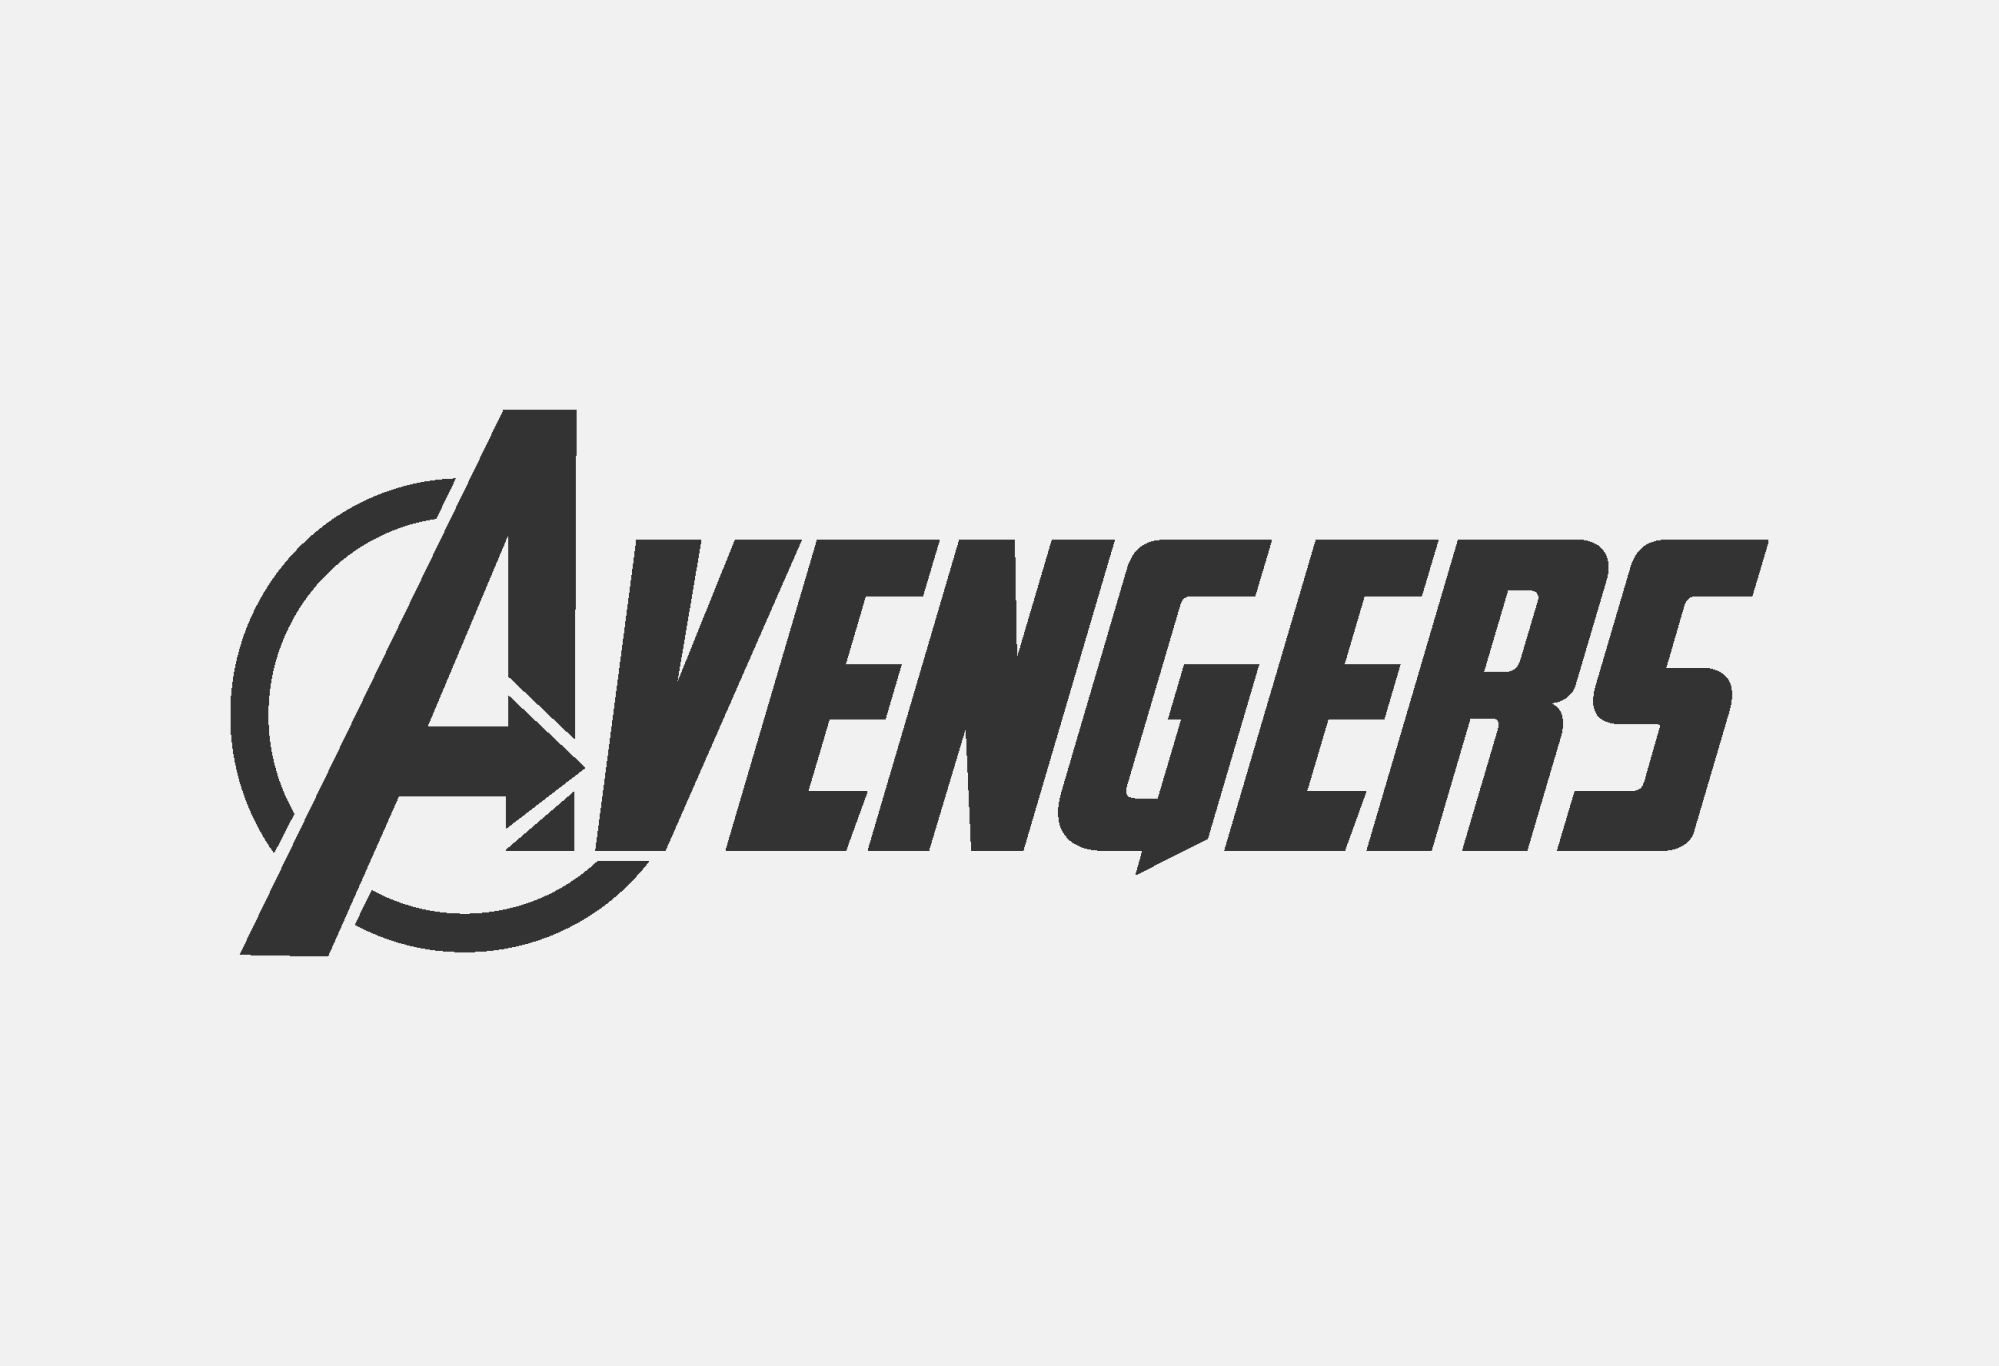 Bạn đang tìm kiếm một font chữ độc đáo để tạo nên những thiết kế sáng tạo cho riêng mình? Đừng bỏ qua bộ font Avengers miễn phí, đặc biệt là font 04b30, trên trang 1001dafont.com. Với bộ font này, bạn có thể thỏa sức sáng tạo ra những thiết kế đặc biệt, mang đậm phong cách siêu anh hùng Avengers.